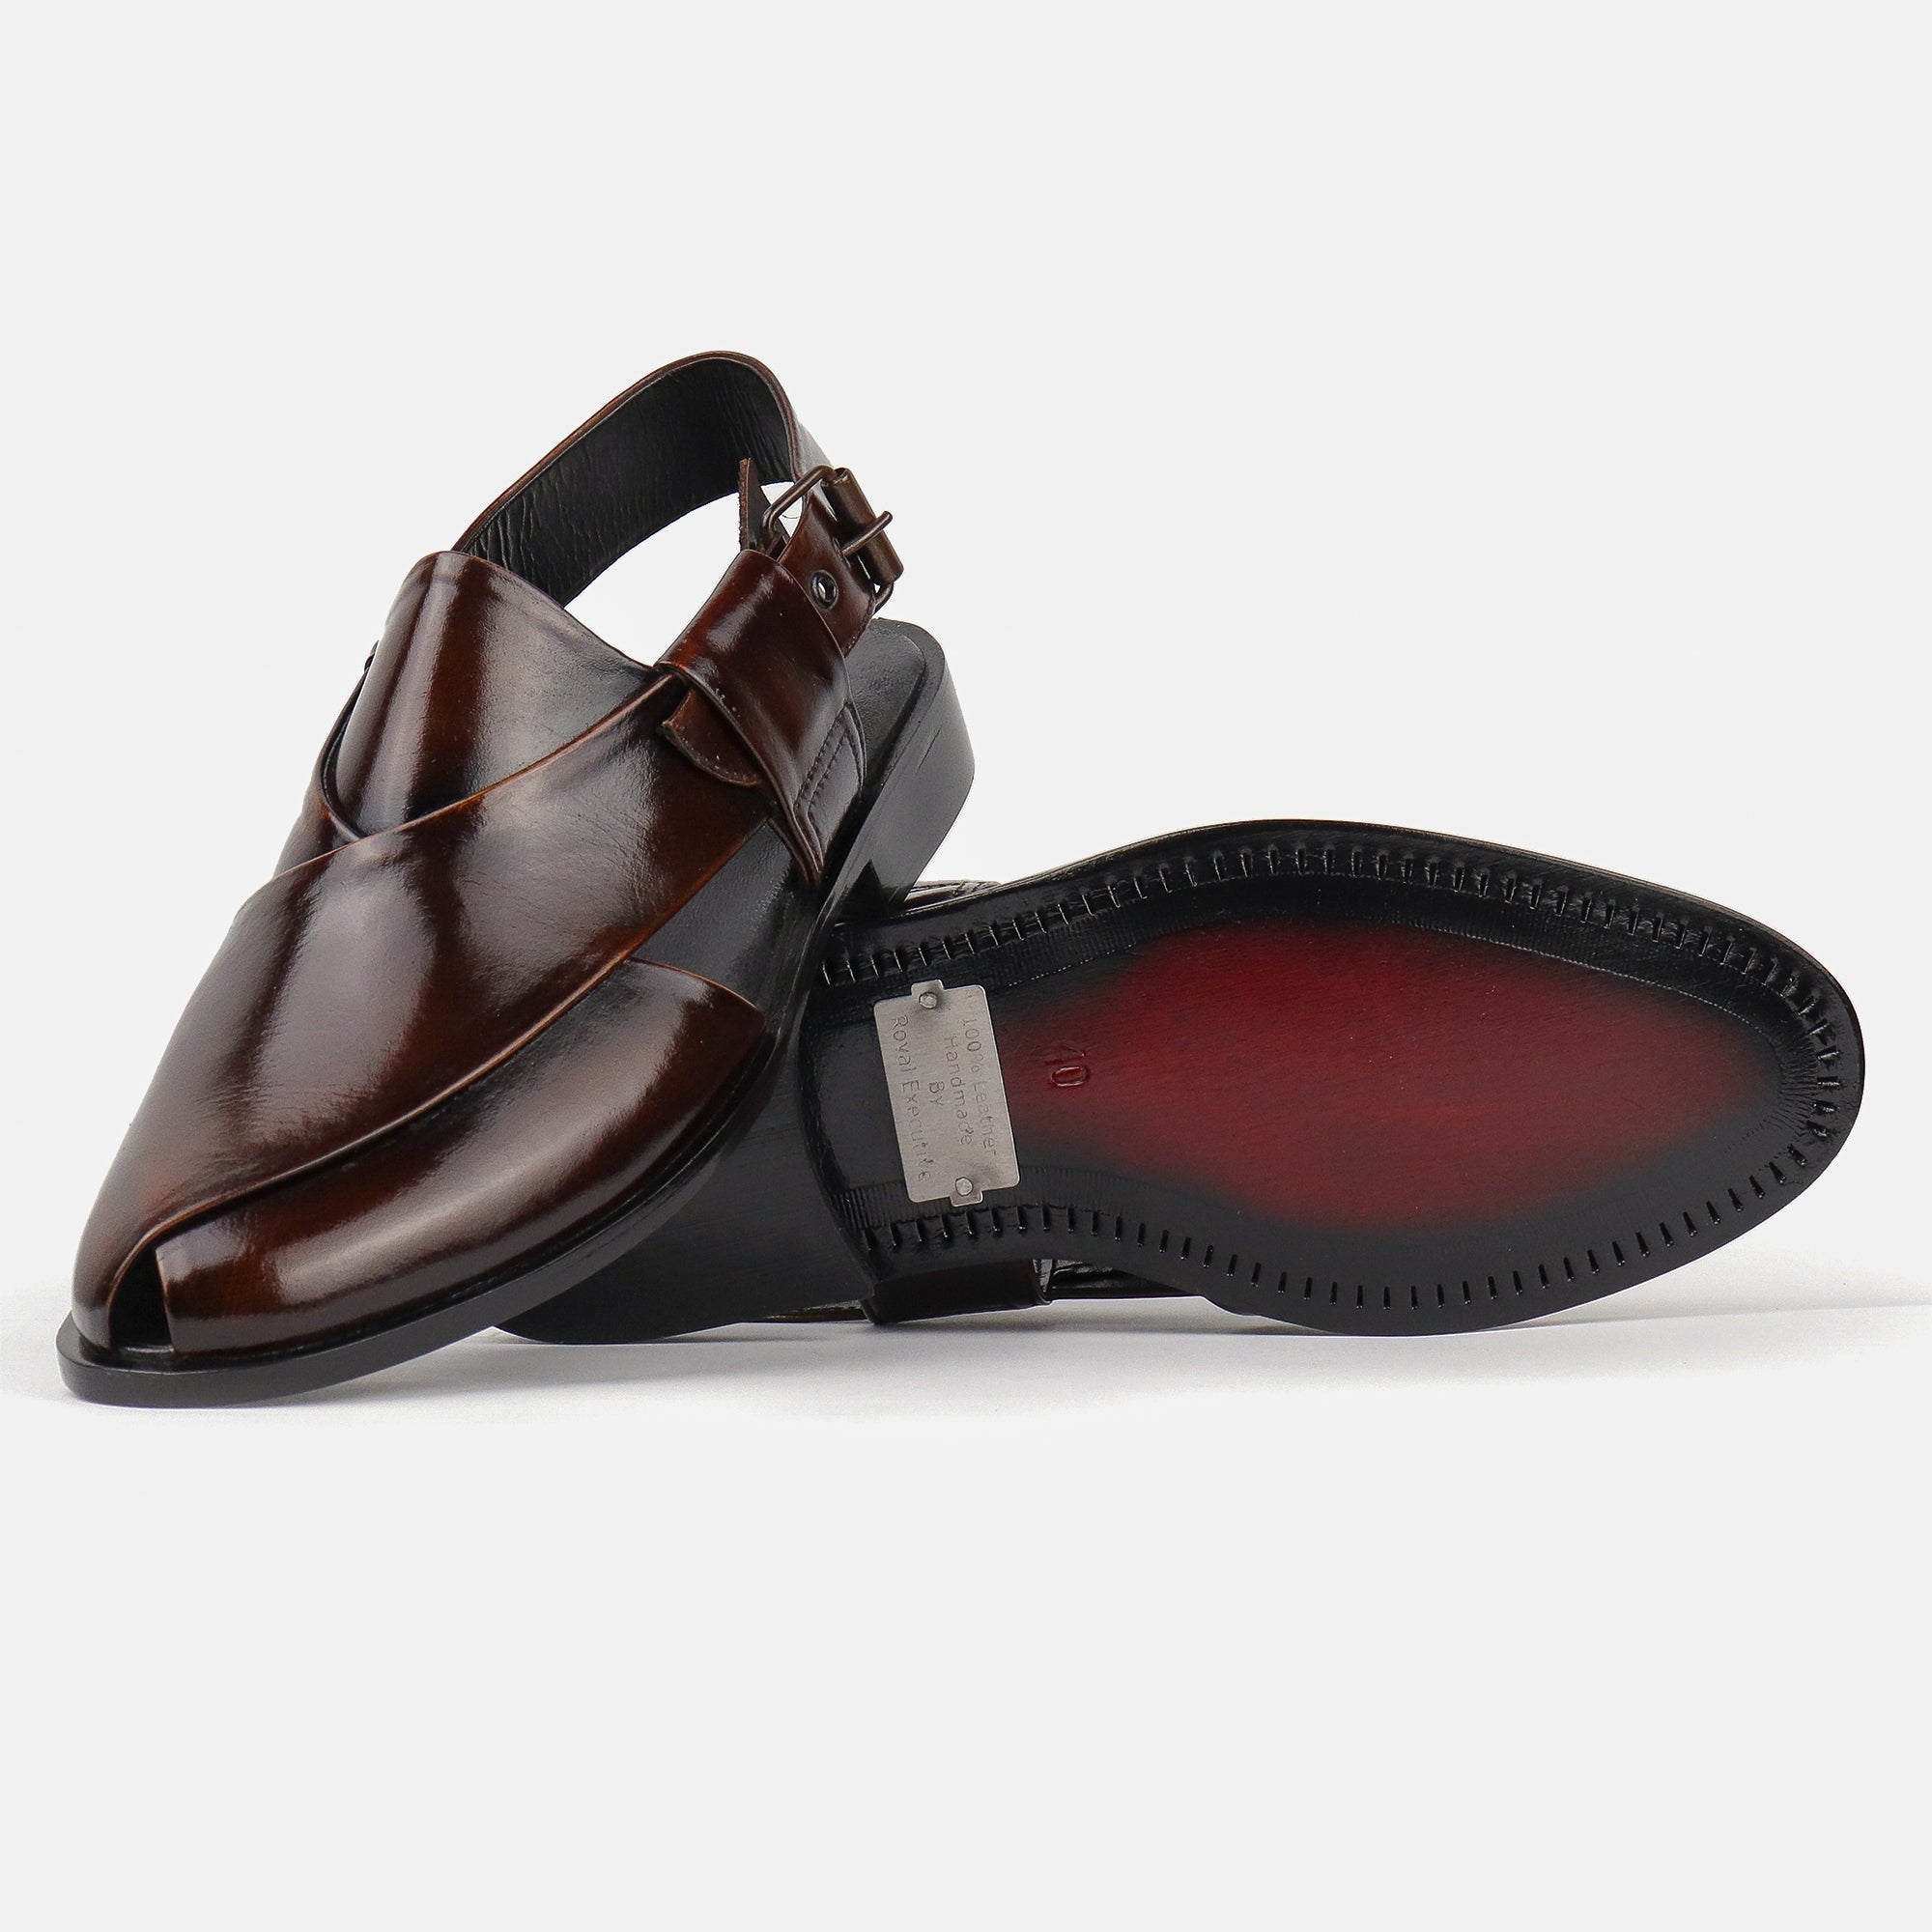 Goka chappal patina - Premium sandal from royalstepshops - Just Rs.7200! Shop now at ROYAL STEP